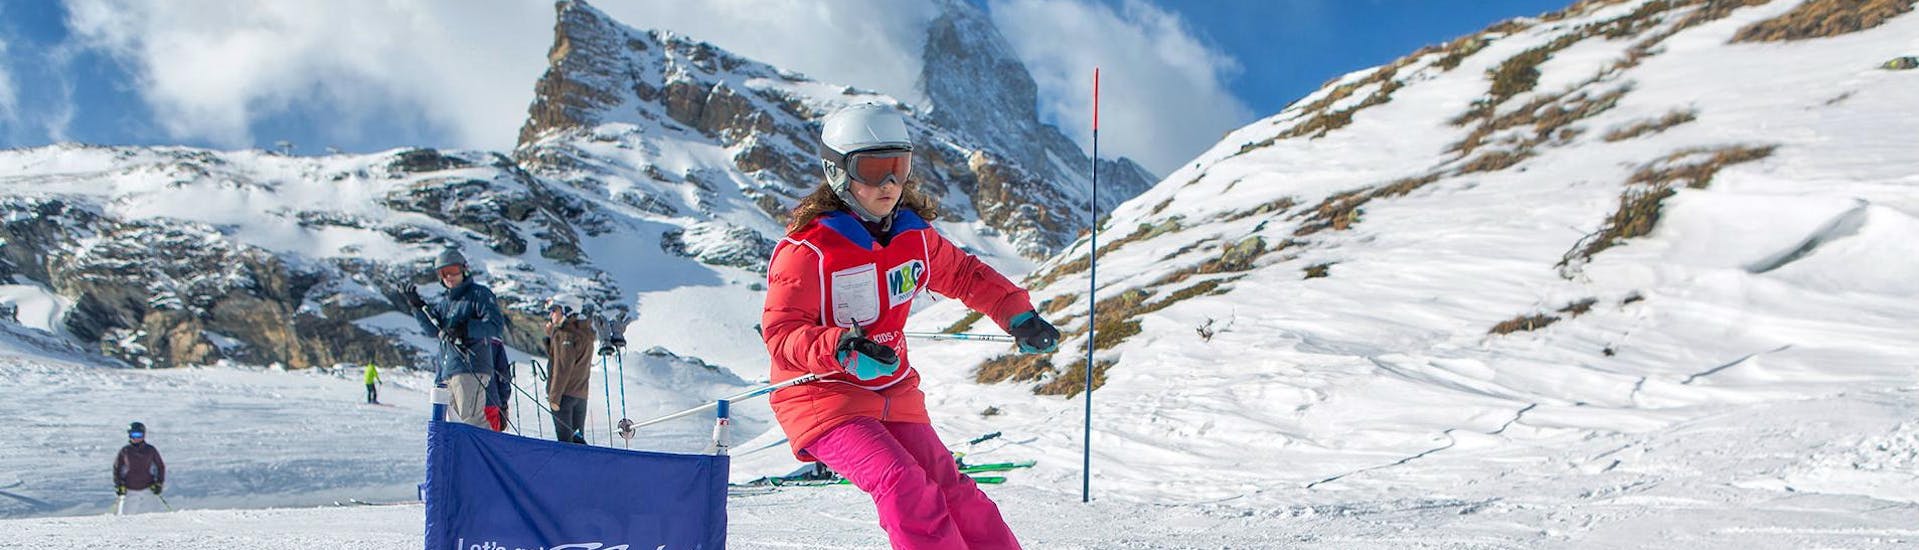 Clases de esquí para niños (5-12 años) de nivel intermedio.